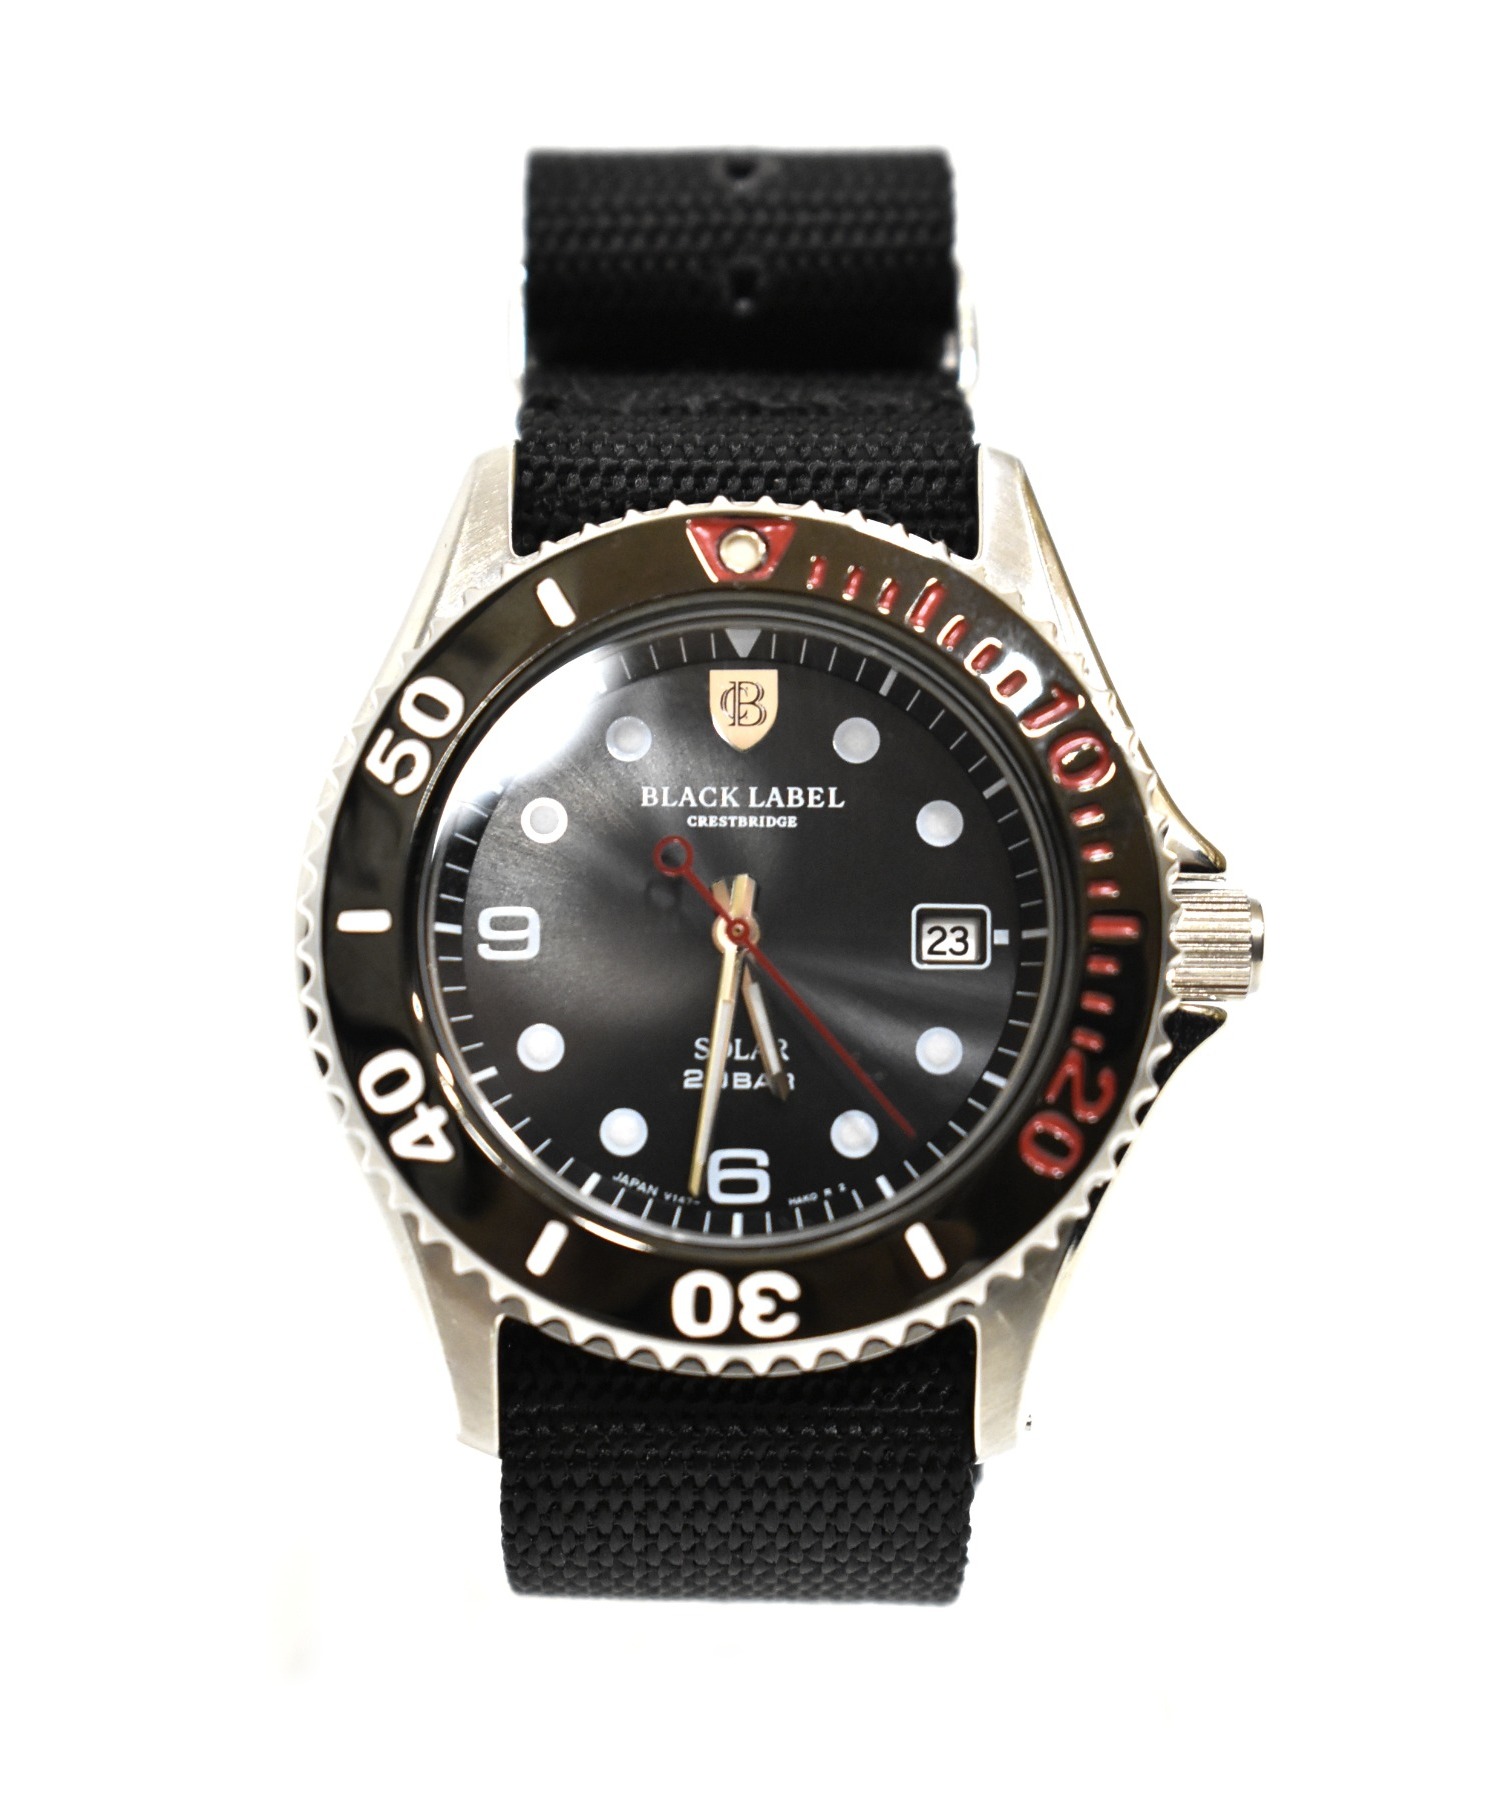 新品 ブラックレーベルクレストブリッジ ダイバーズウォッチ 腕時計 訳あり 全品最安値に挑戦